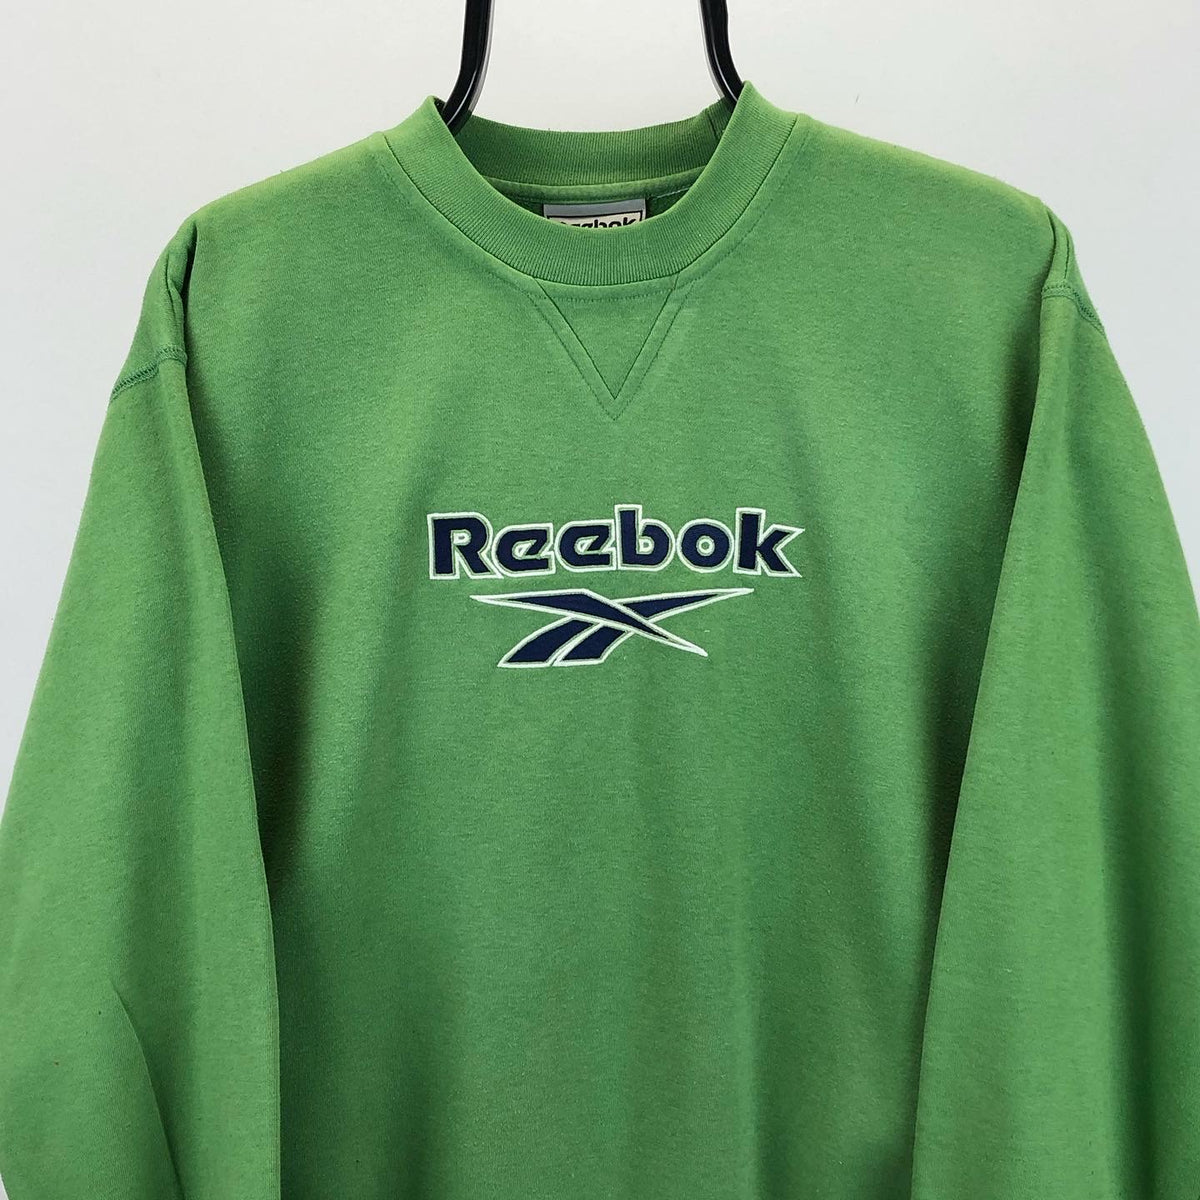 Vintage 90s Reebok Spellout Sweatshirt in Green - Men's Small/Women's ...